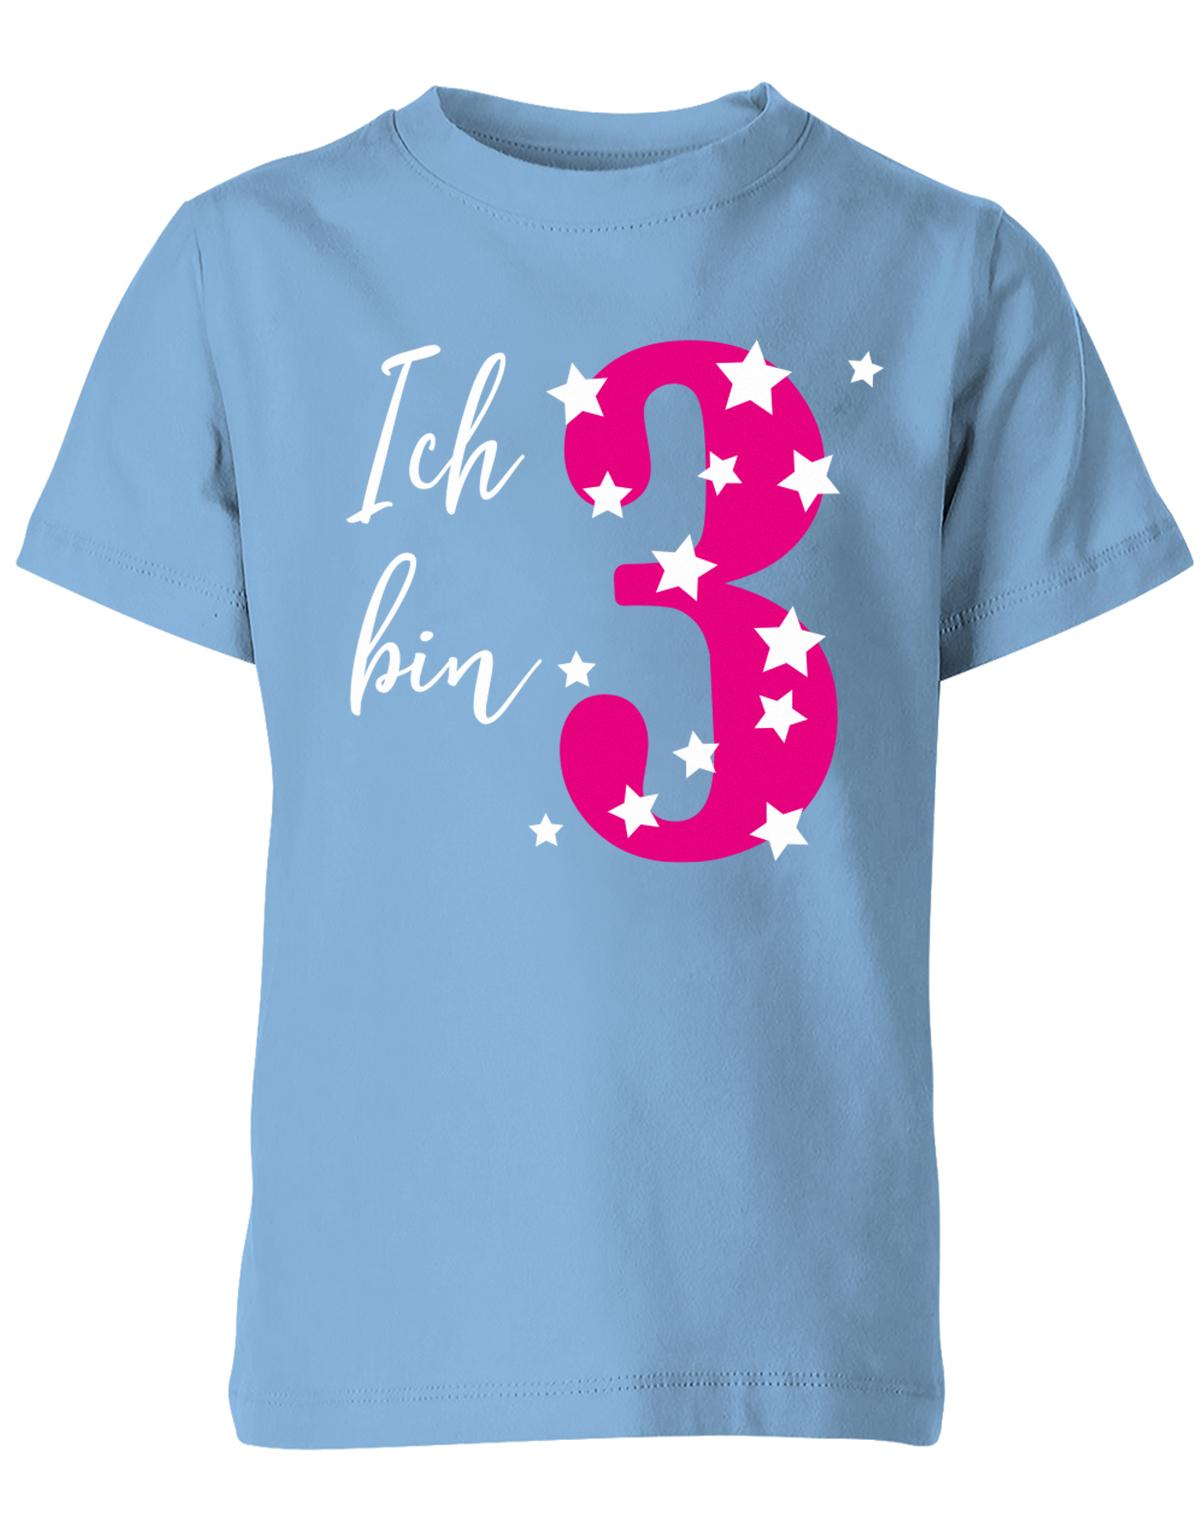 ich-bin-3-sterne-sternchen-geburtstag-kinder-shirt-hellblau